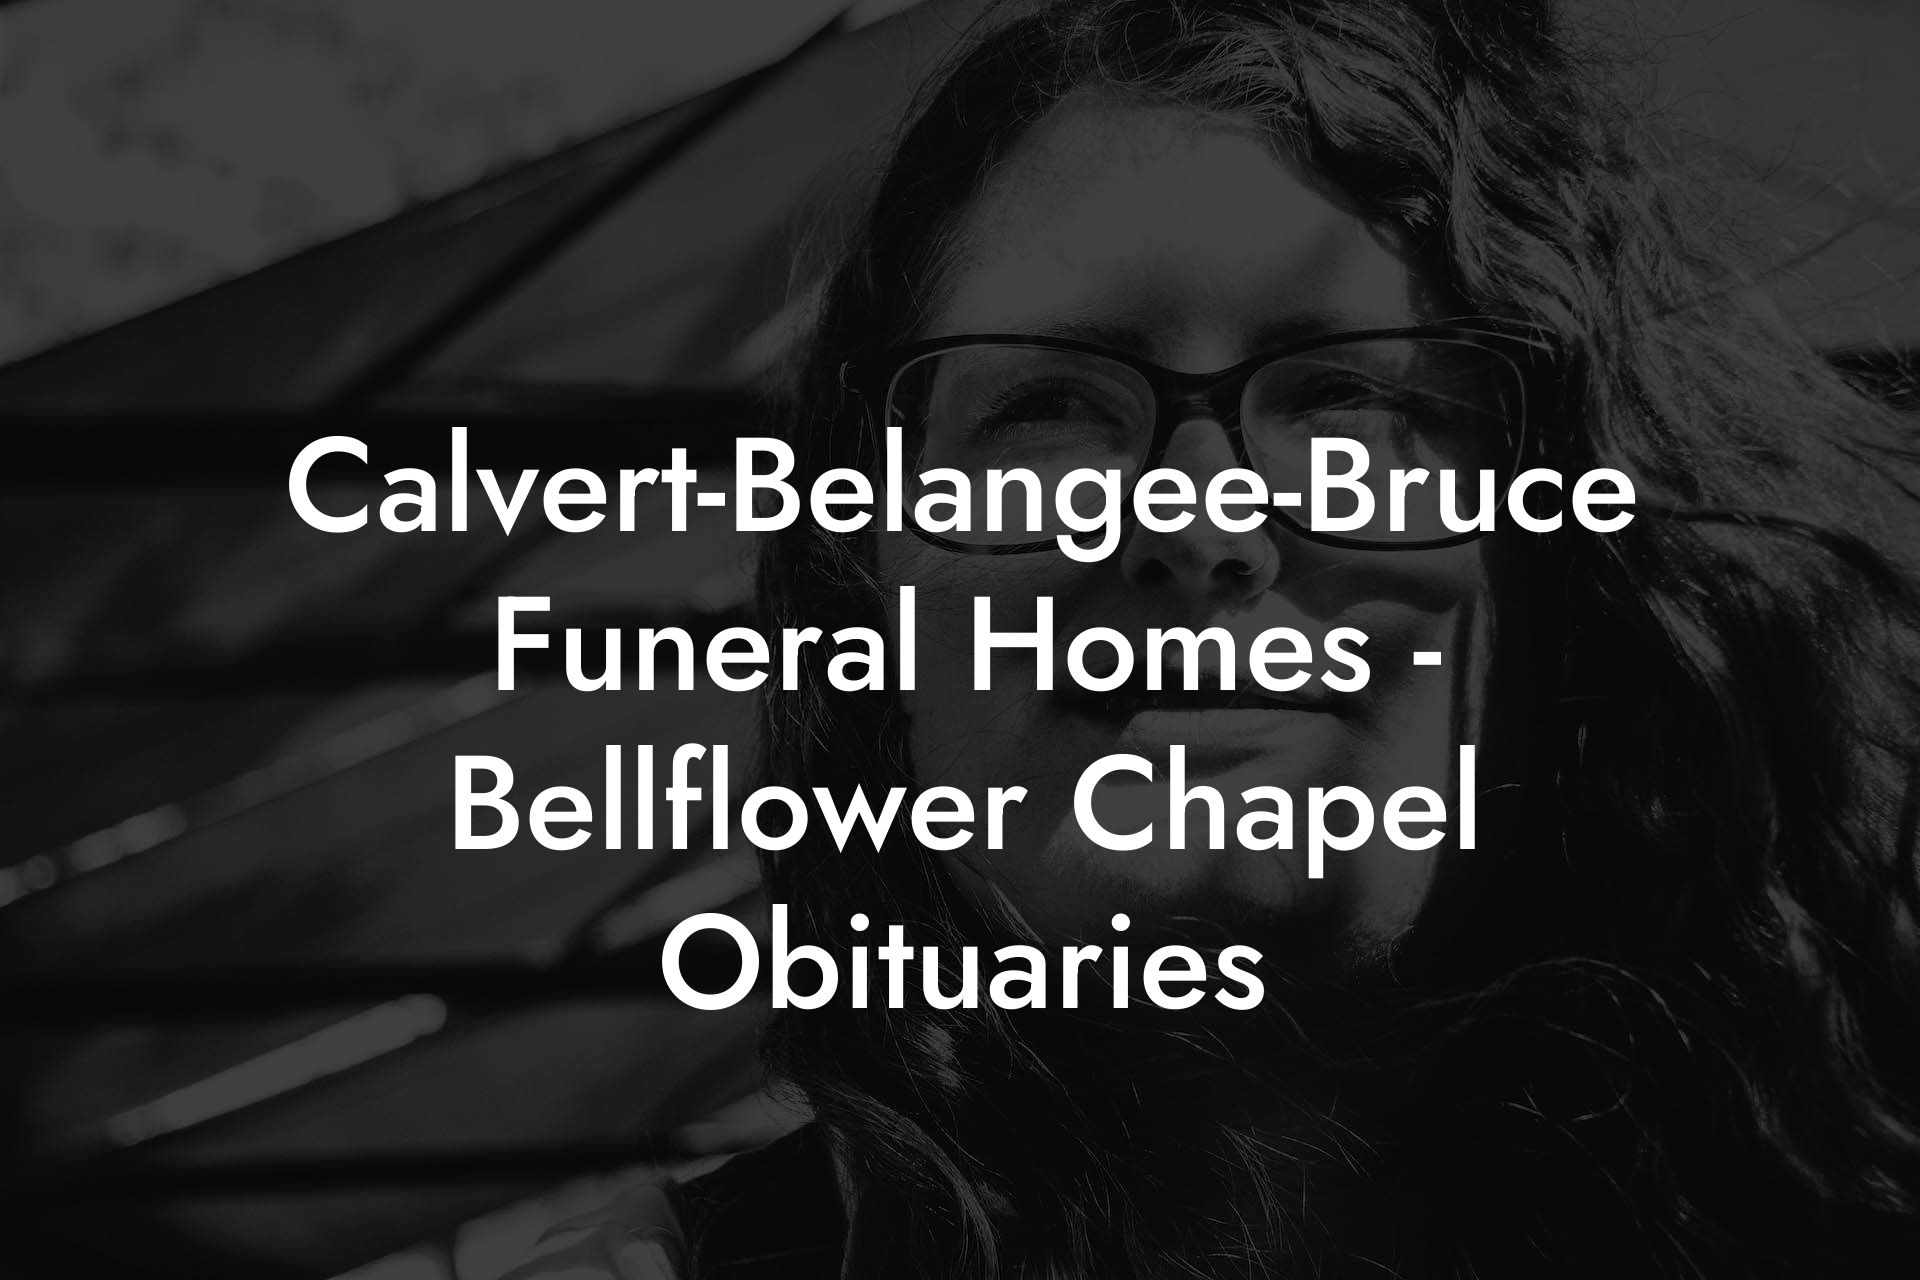 Calvert-Belangee-Bruce Funeral Homes - Bellflower Chapel Obituaries